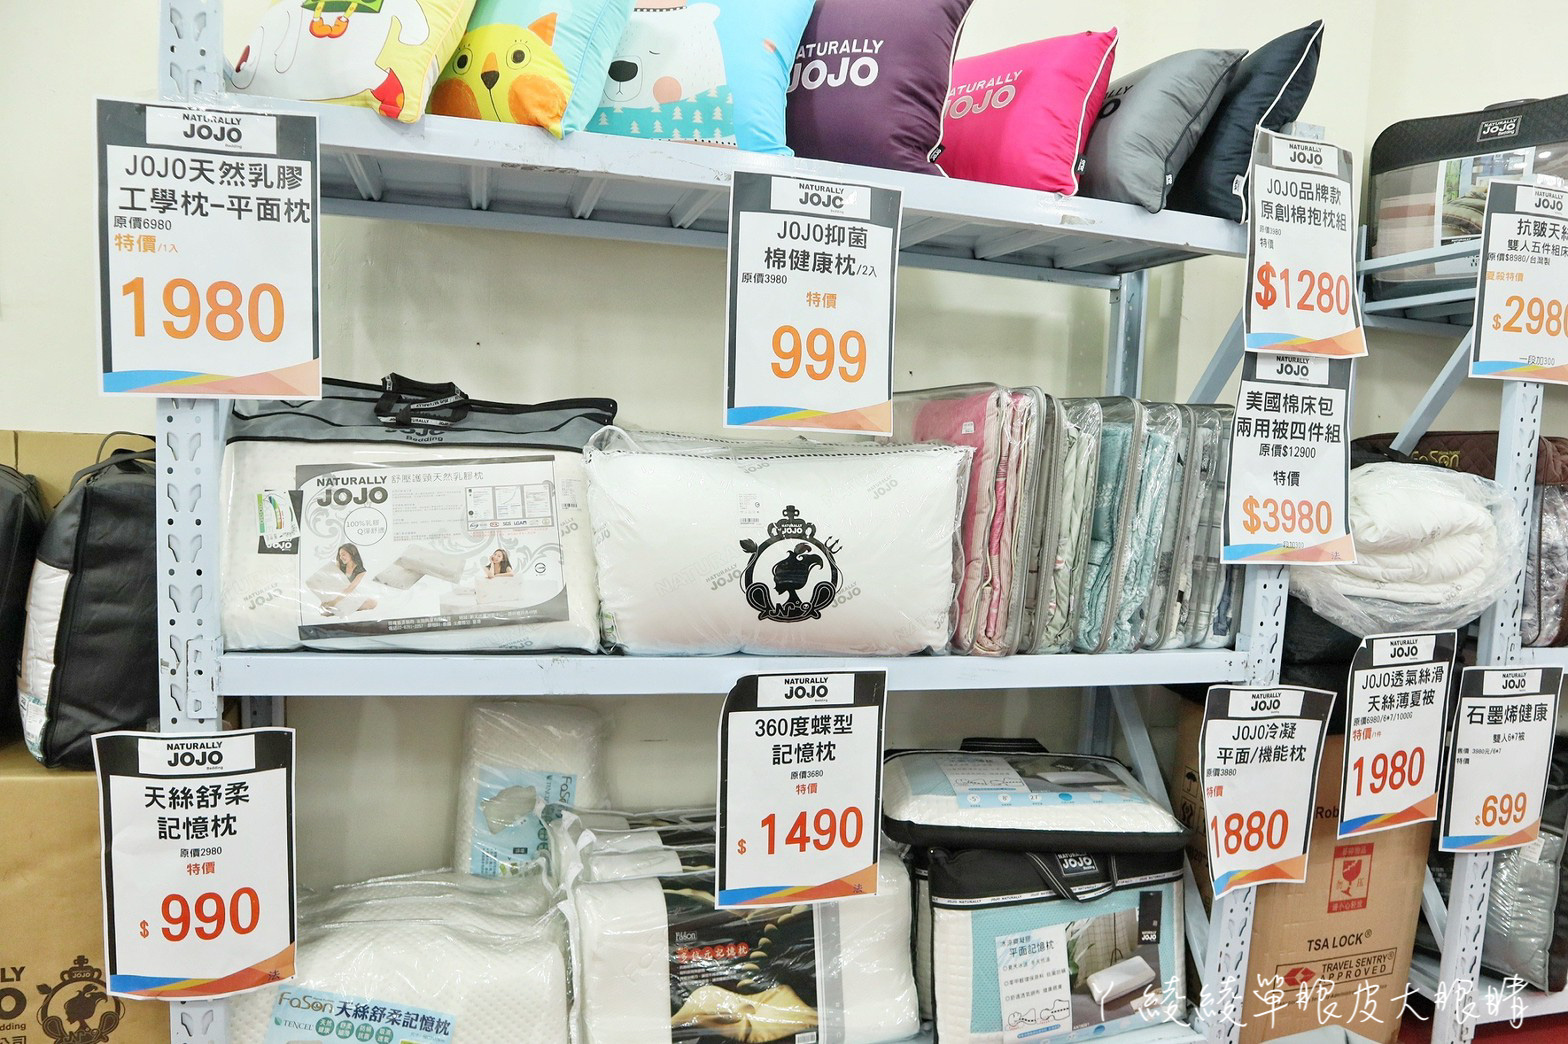 新竹寢具特賣會NATURALLY JOJO｜枕頭買一送一、床包組最便宜399元！可用五倍券